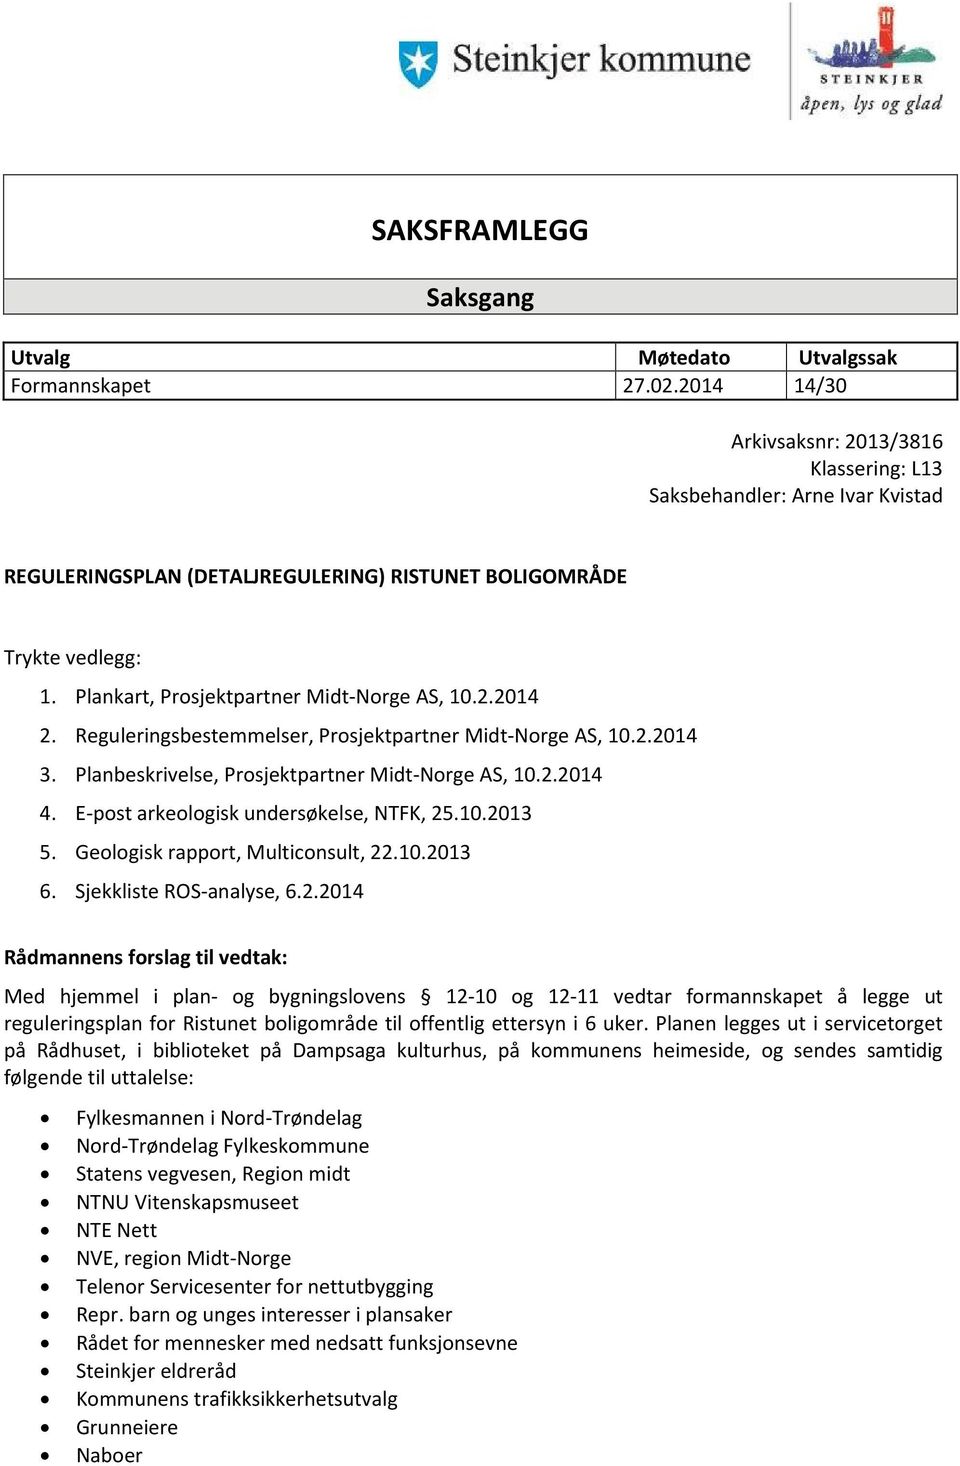 Plankart, Prosjektpartner Midt-Norge AS, 10.2.2014 2. Reguleringsbestemmelser, Prosjektpartner Midt-Norge AS, 10.2.2014 3. Planbeskrivelse, Prosjektpartner Midt-Norge AS, 10.2.2014 4.